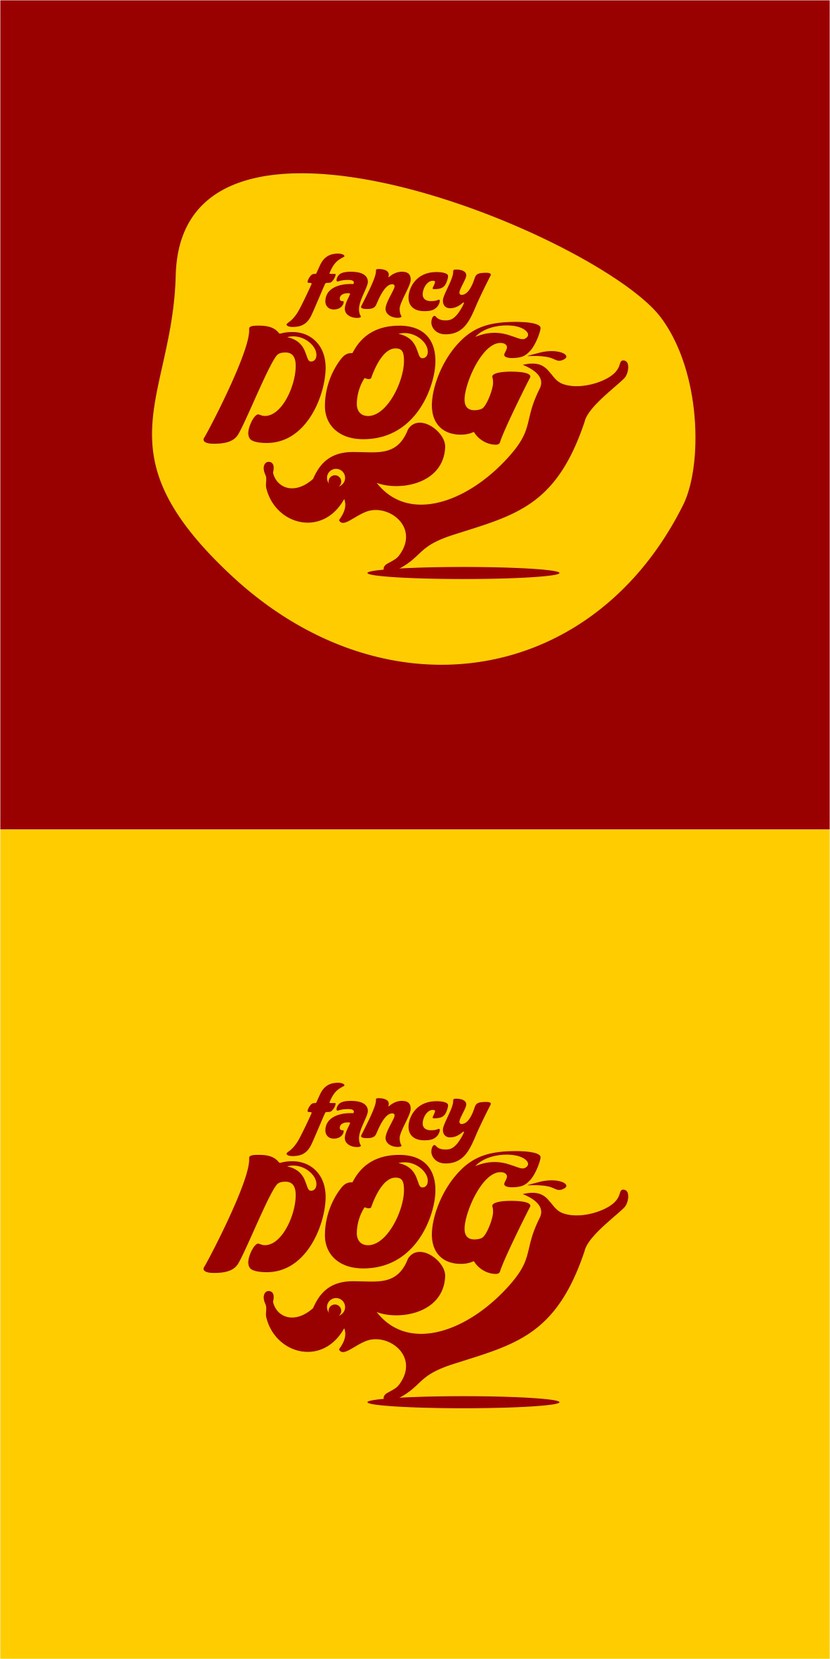 Добрый день! Мой вариант логотипа - динамичный, креативный, запоминающий!!!! 
Комментируйте если нужно что-то подправить))) - Разработка логотипа для сети кафе формата стрит-фуд "FANCY DOG", основа меню - хотдоги.